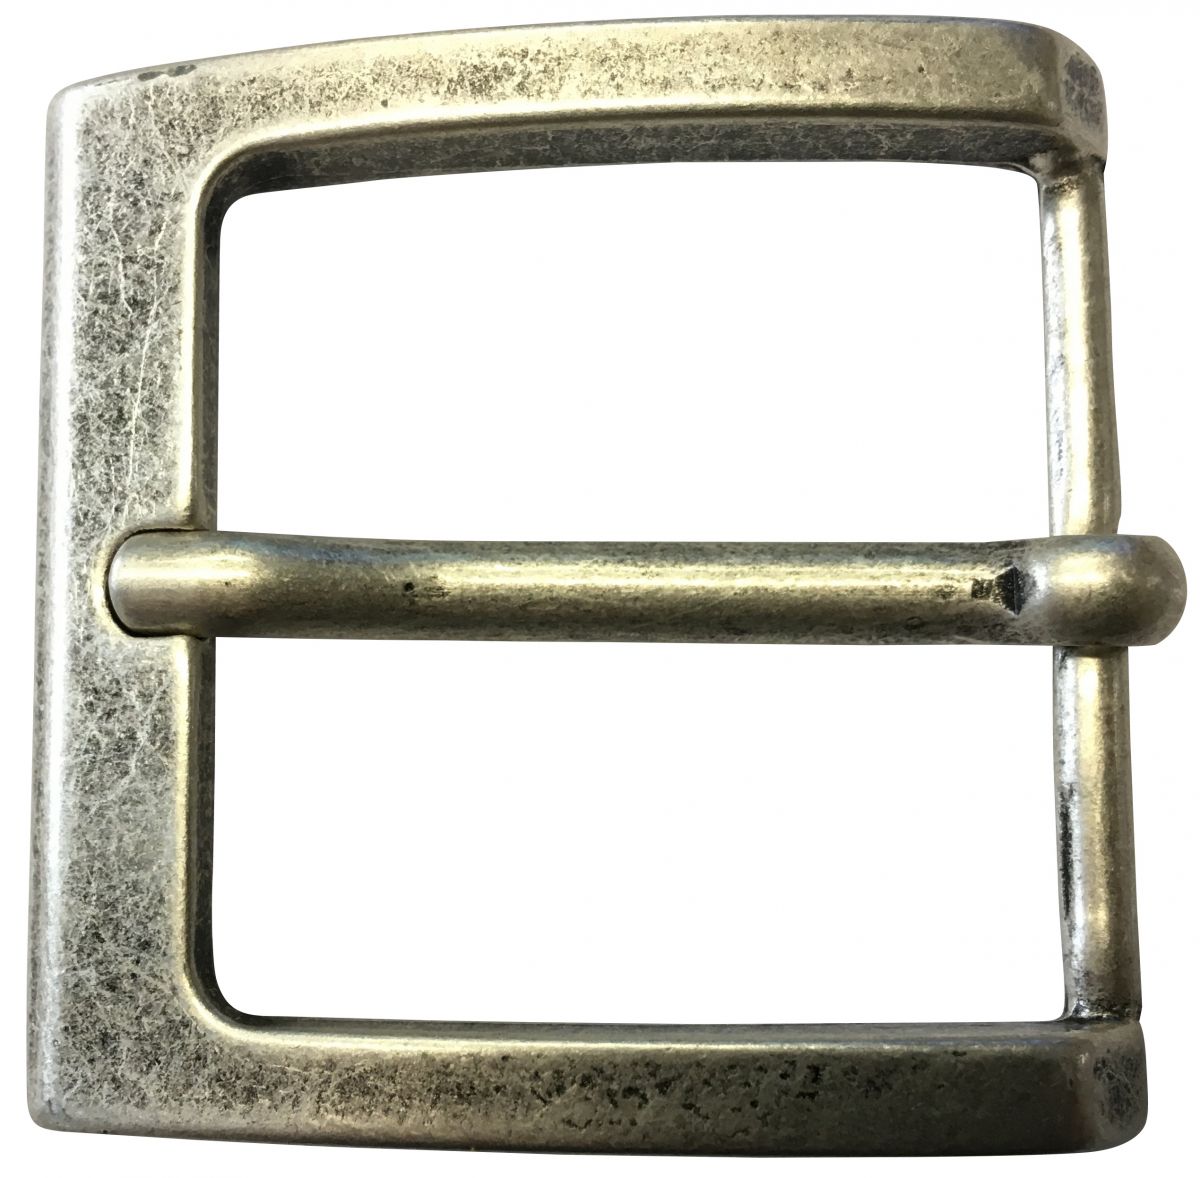 Wechselgürtel bis 4cm Buckle Wechselschließe Gürtelschließe 40mm Massiv Brazil Lederwaren Gürtelschnalle Round 4,0 cm